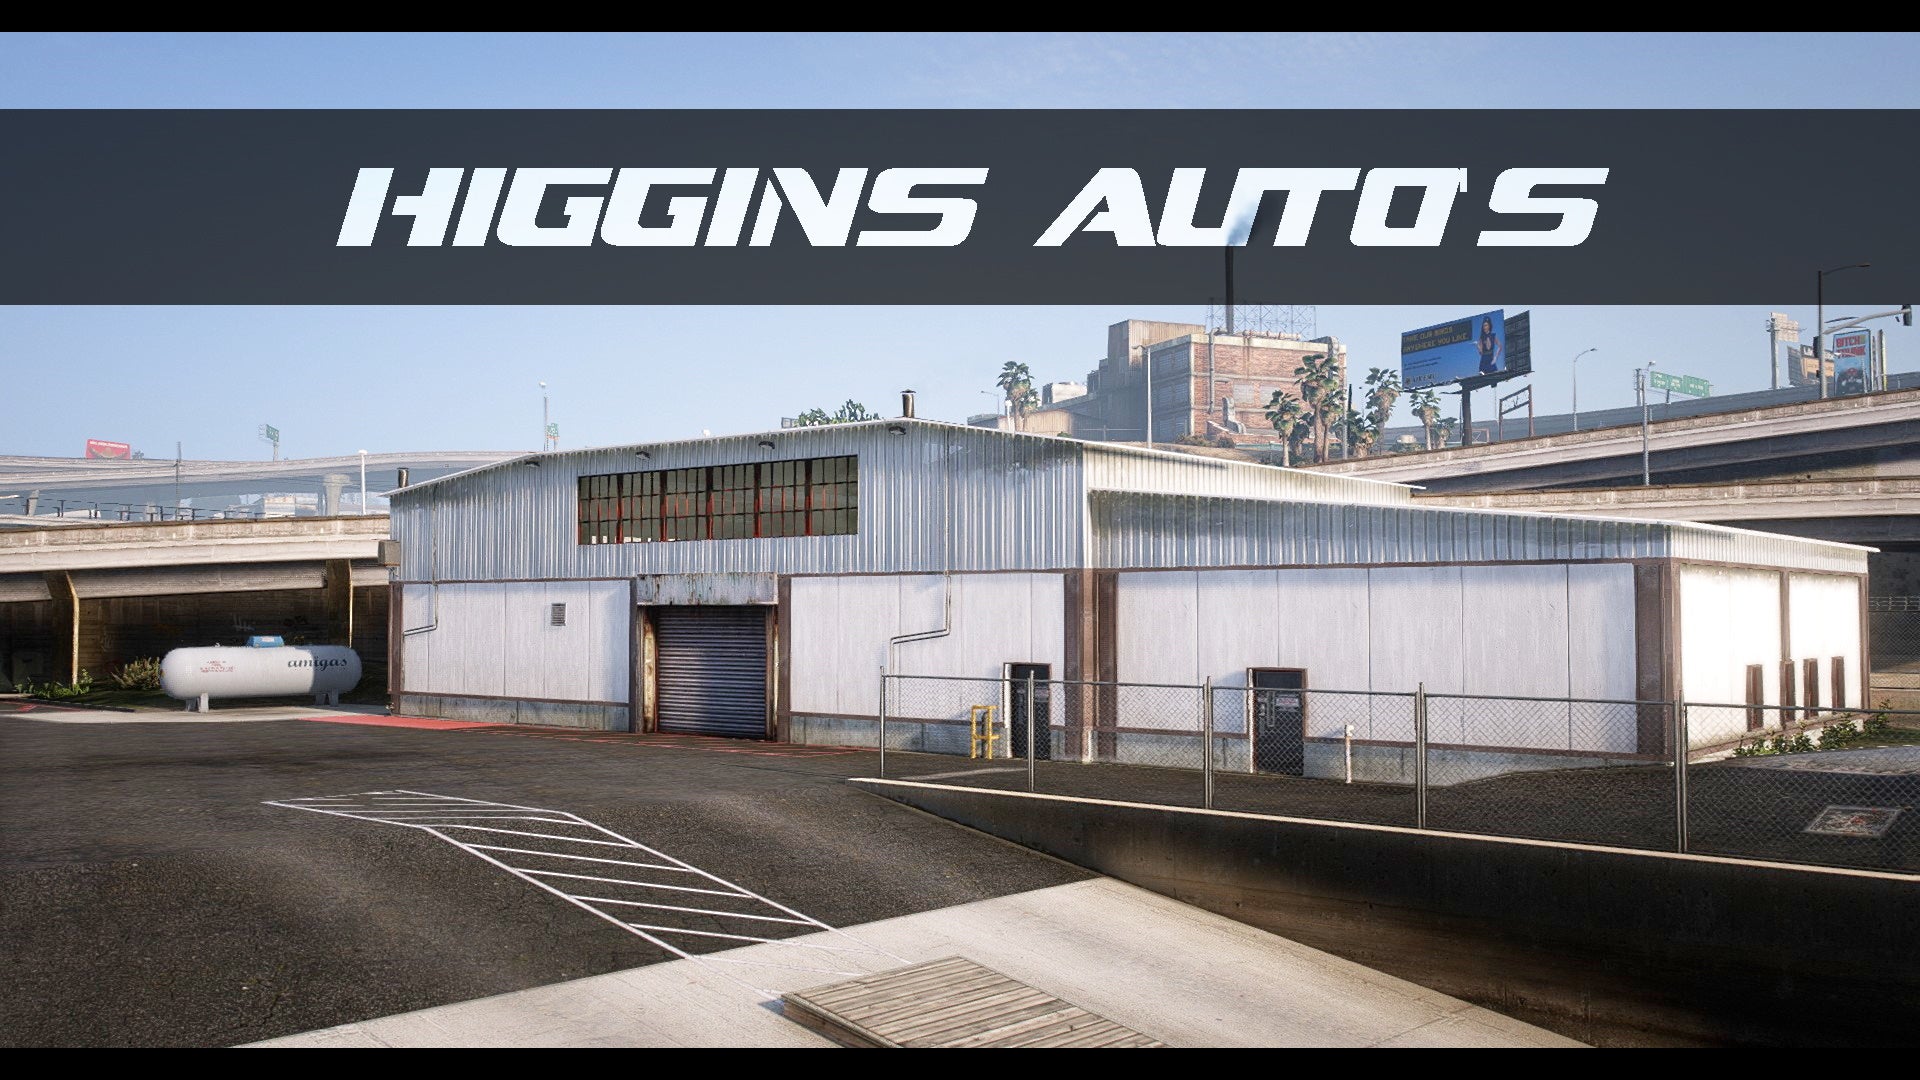 Higgins Auto's Map Edit for GTA5 / FiveM, MLO Interior Garage Shop for FiveM